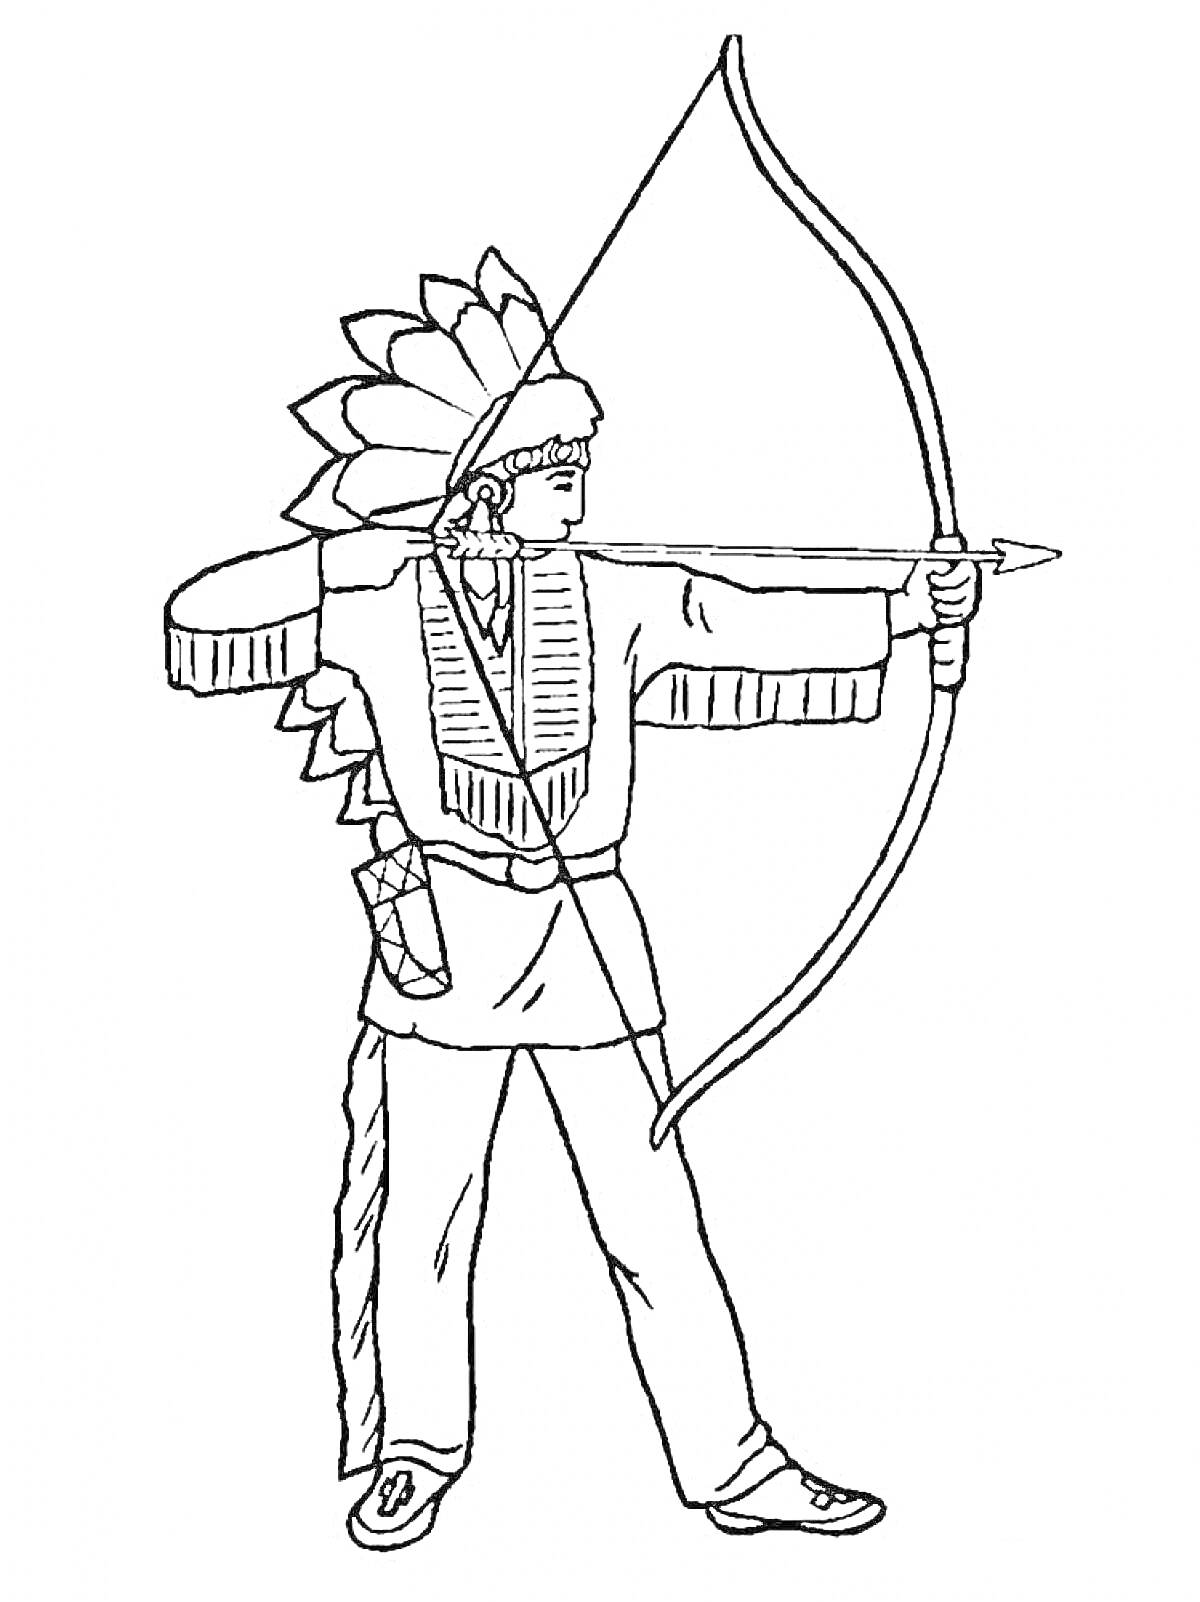 Человек в костюме индейца с луком и стрелой